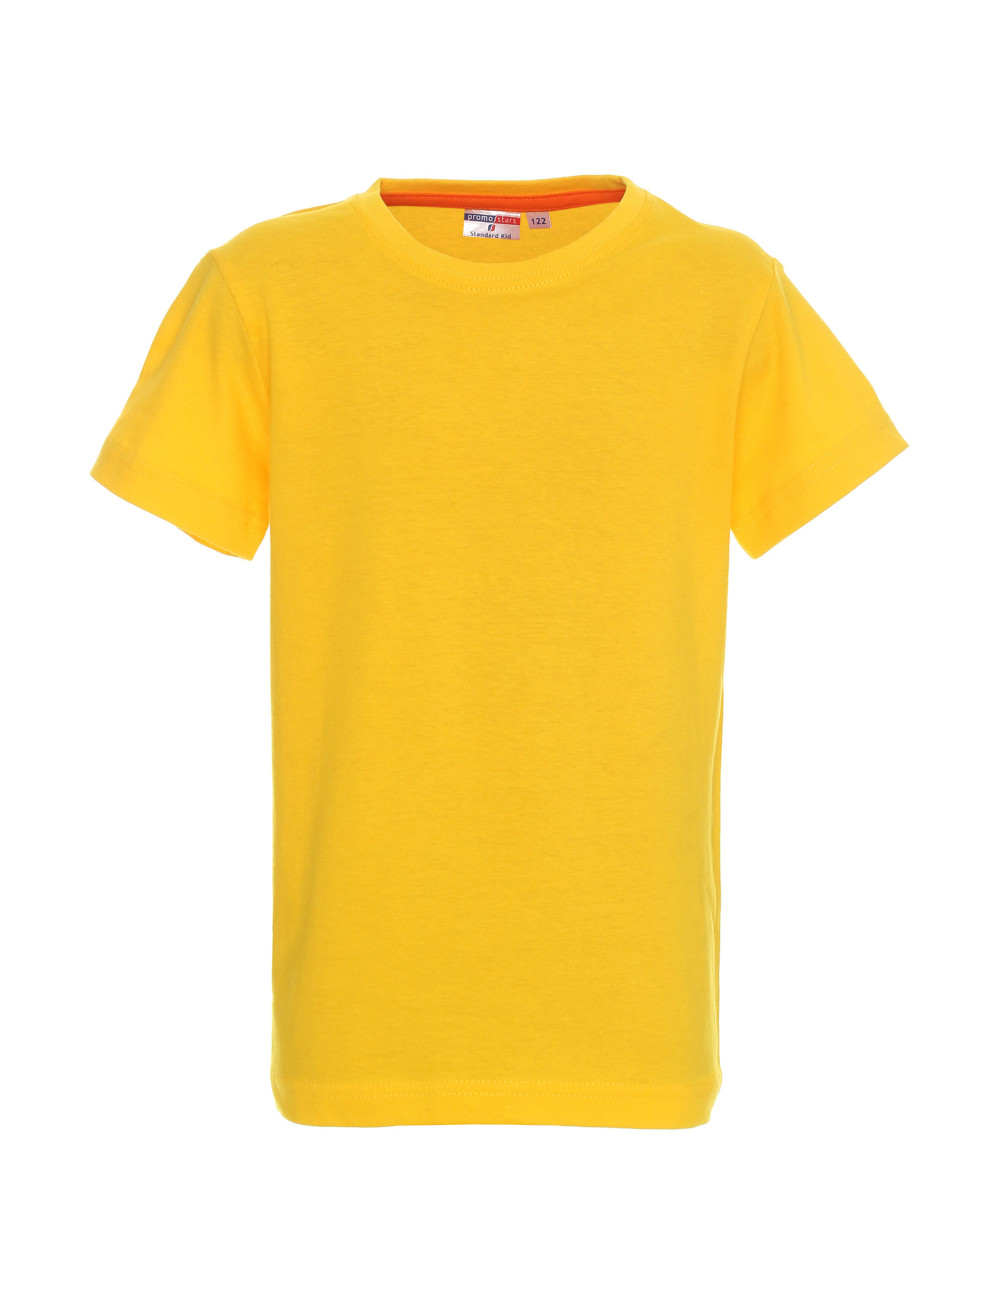 Kinder-T-Shirt Standard Kid 150 gelb Promostars